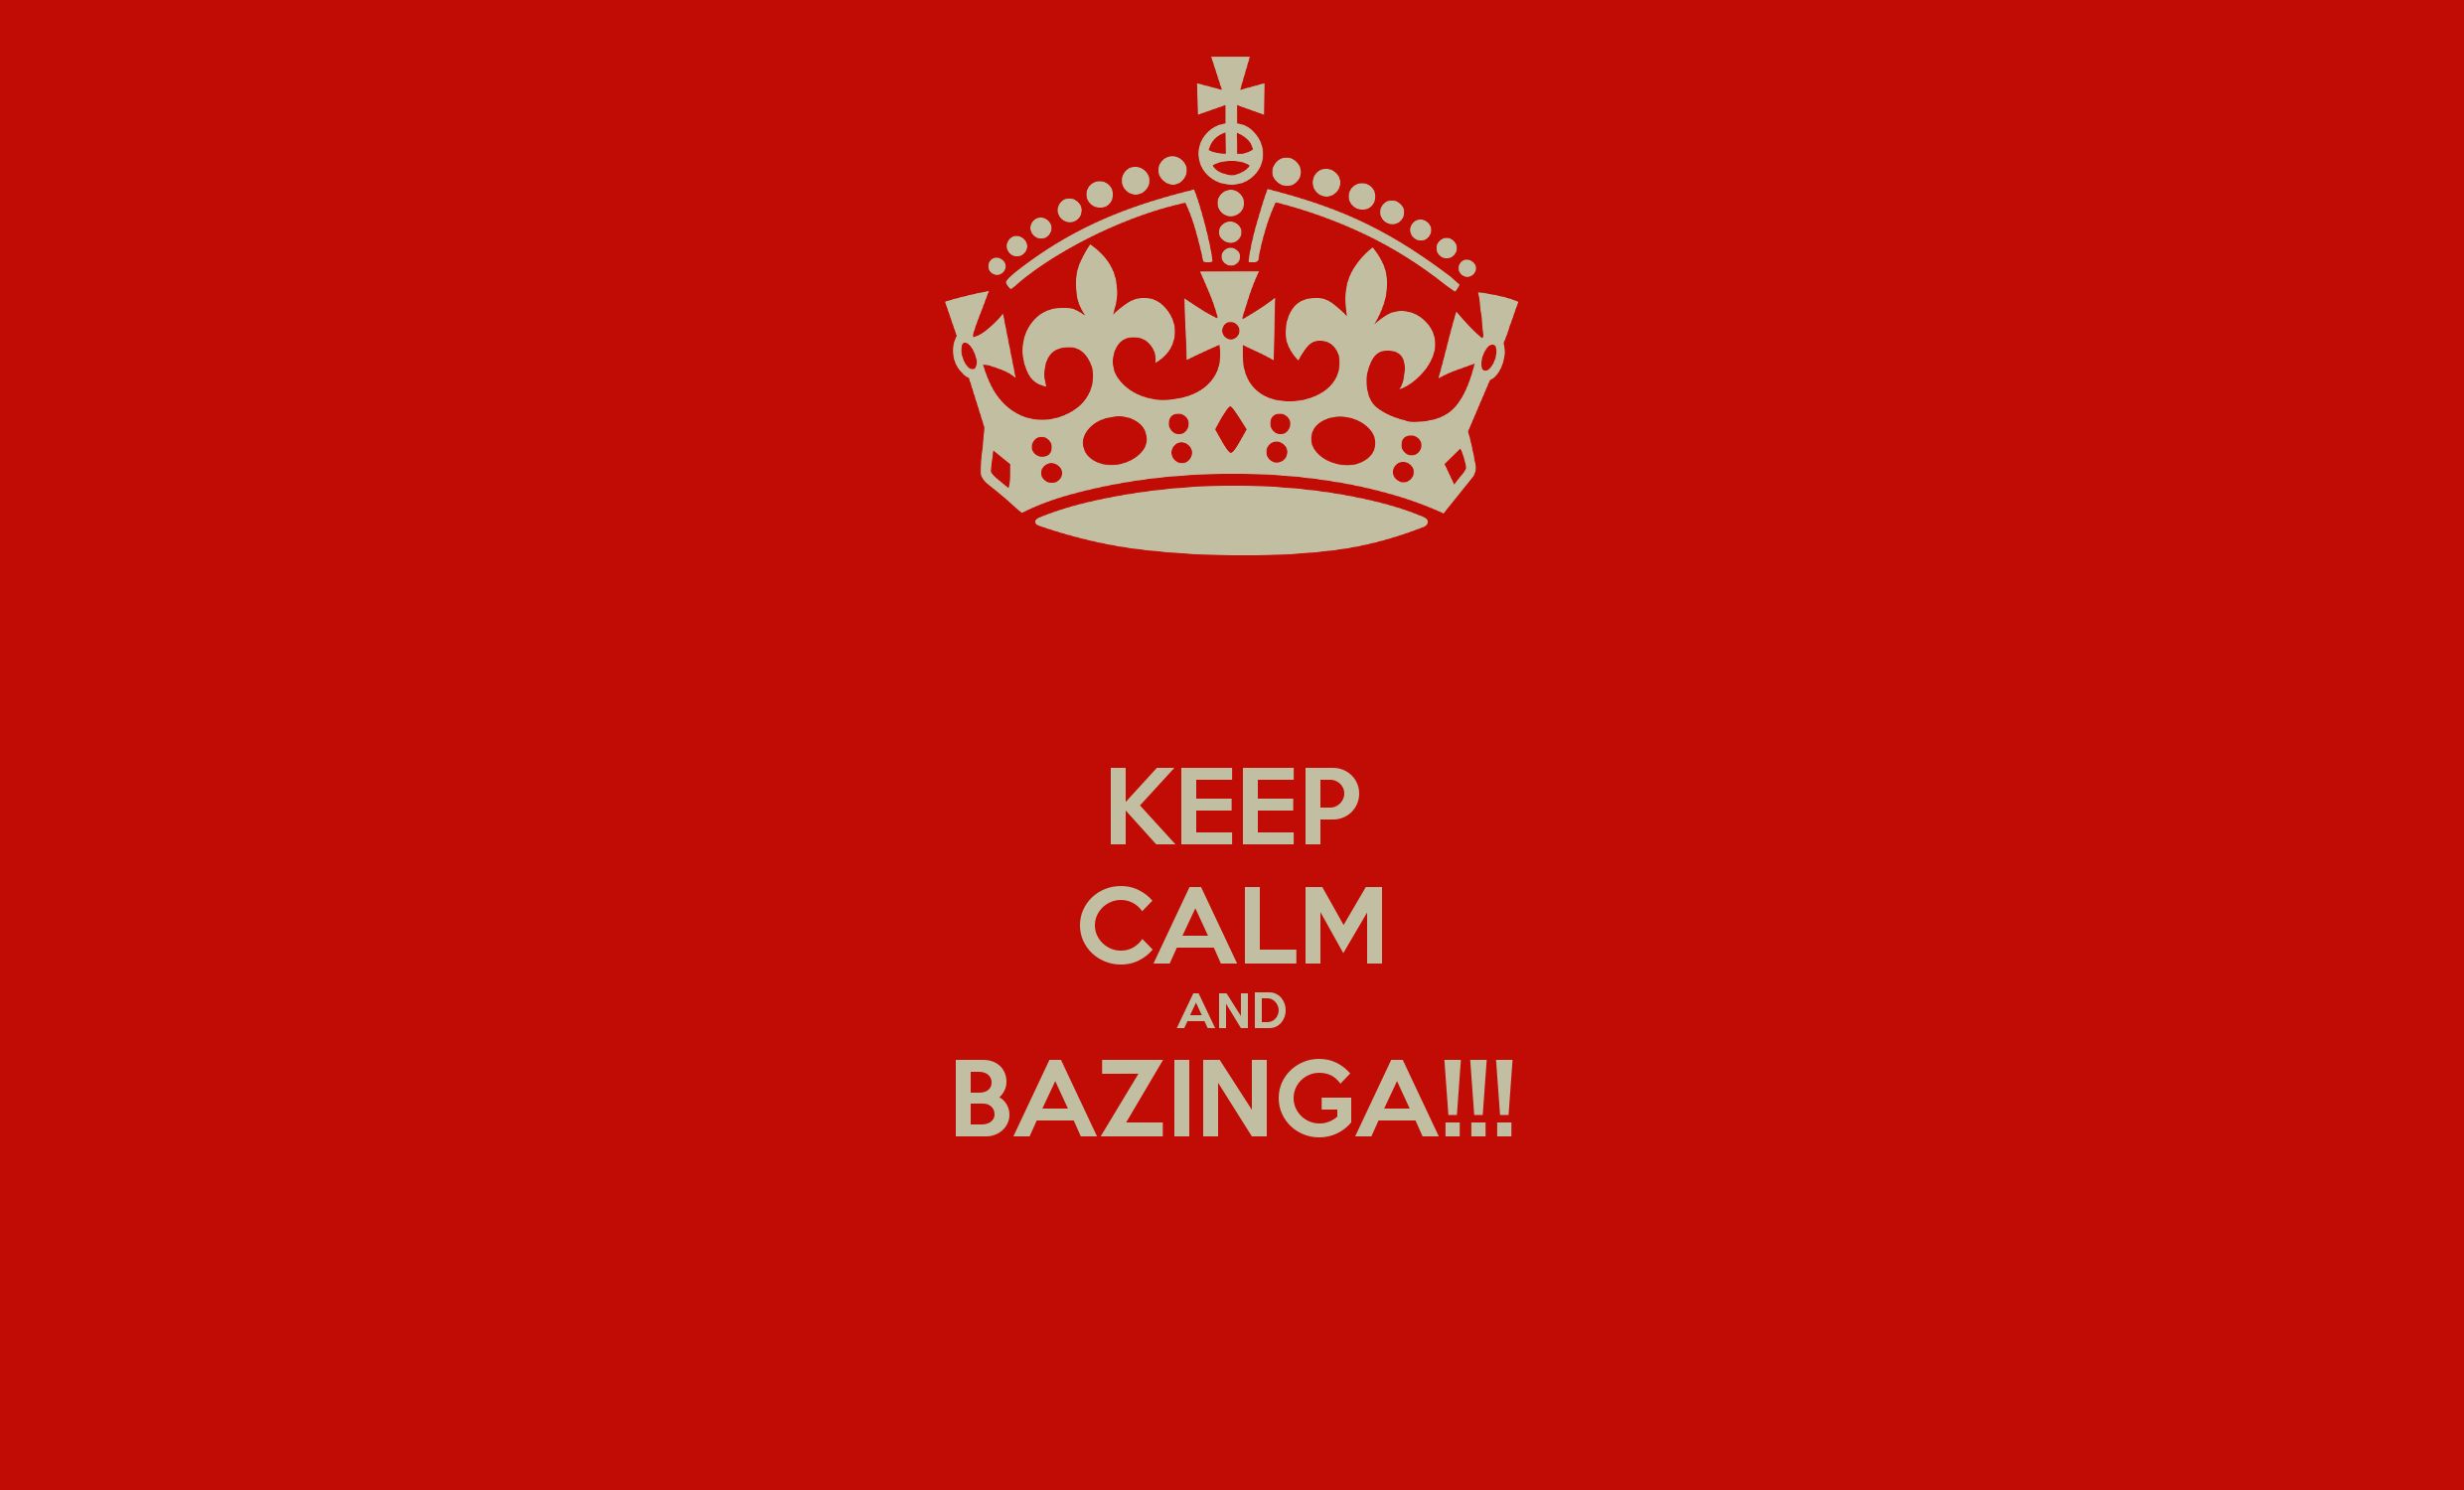 tv show, the big bang theory, bazinga, keep calm, red